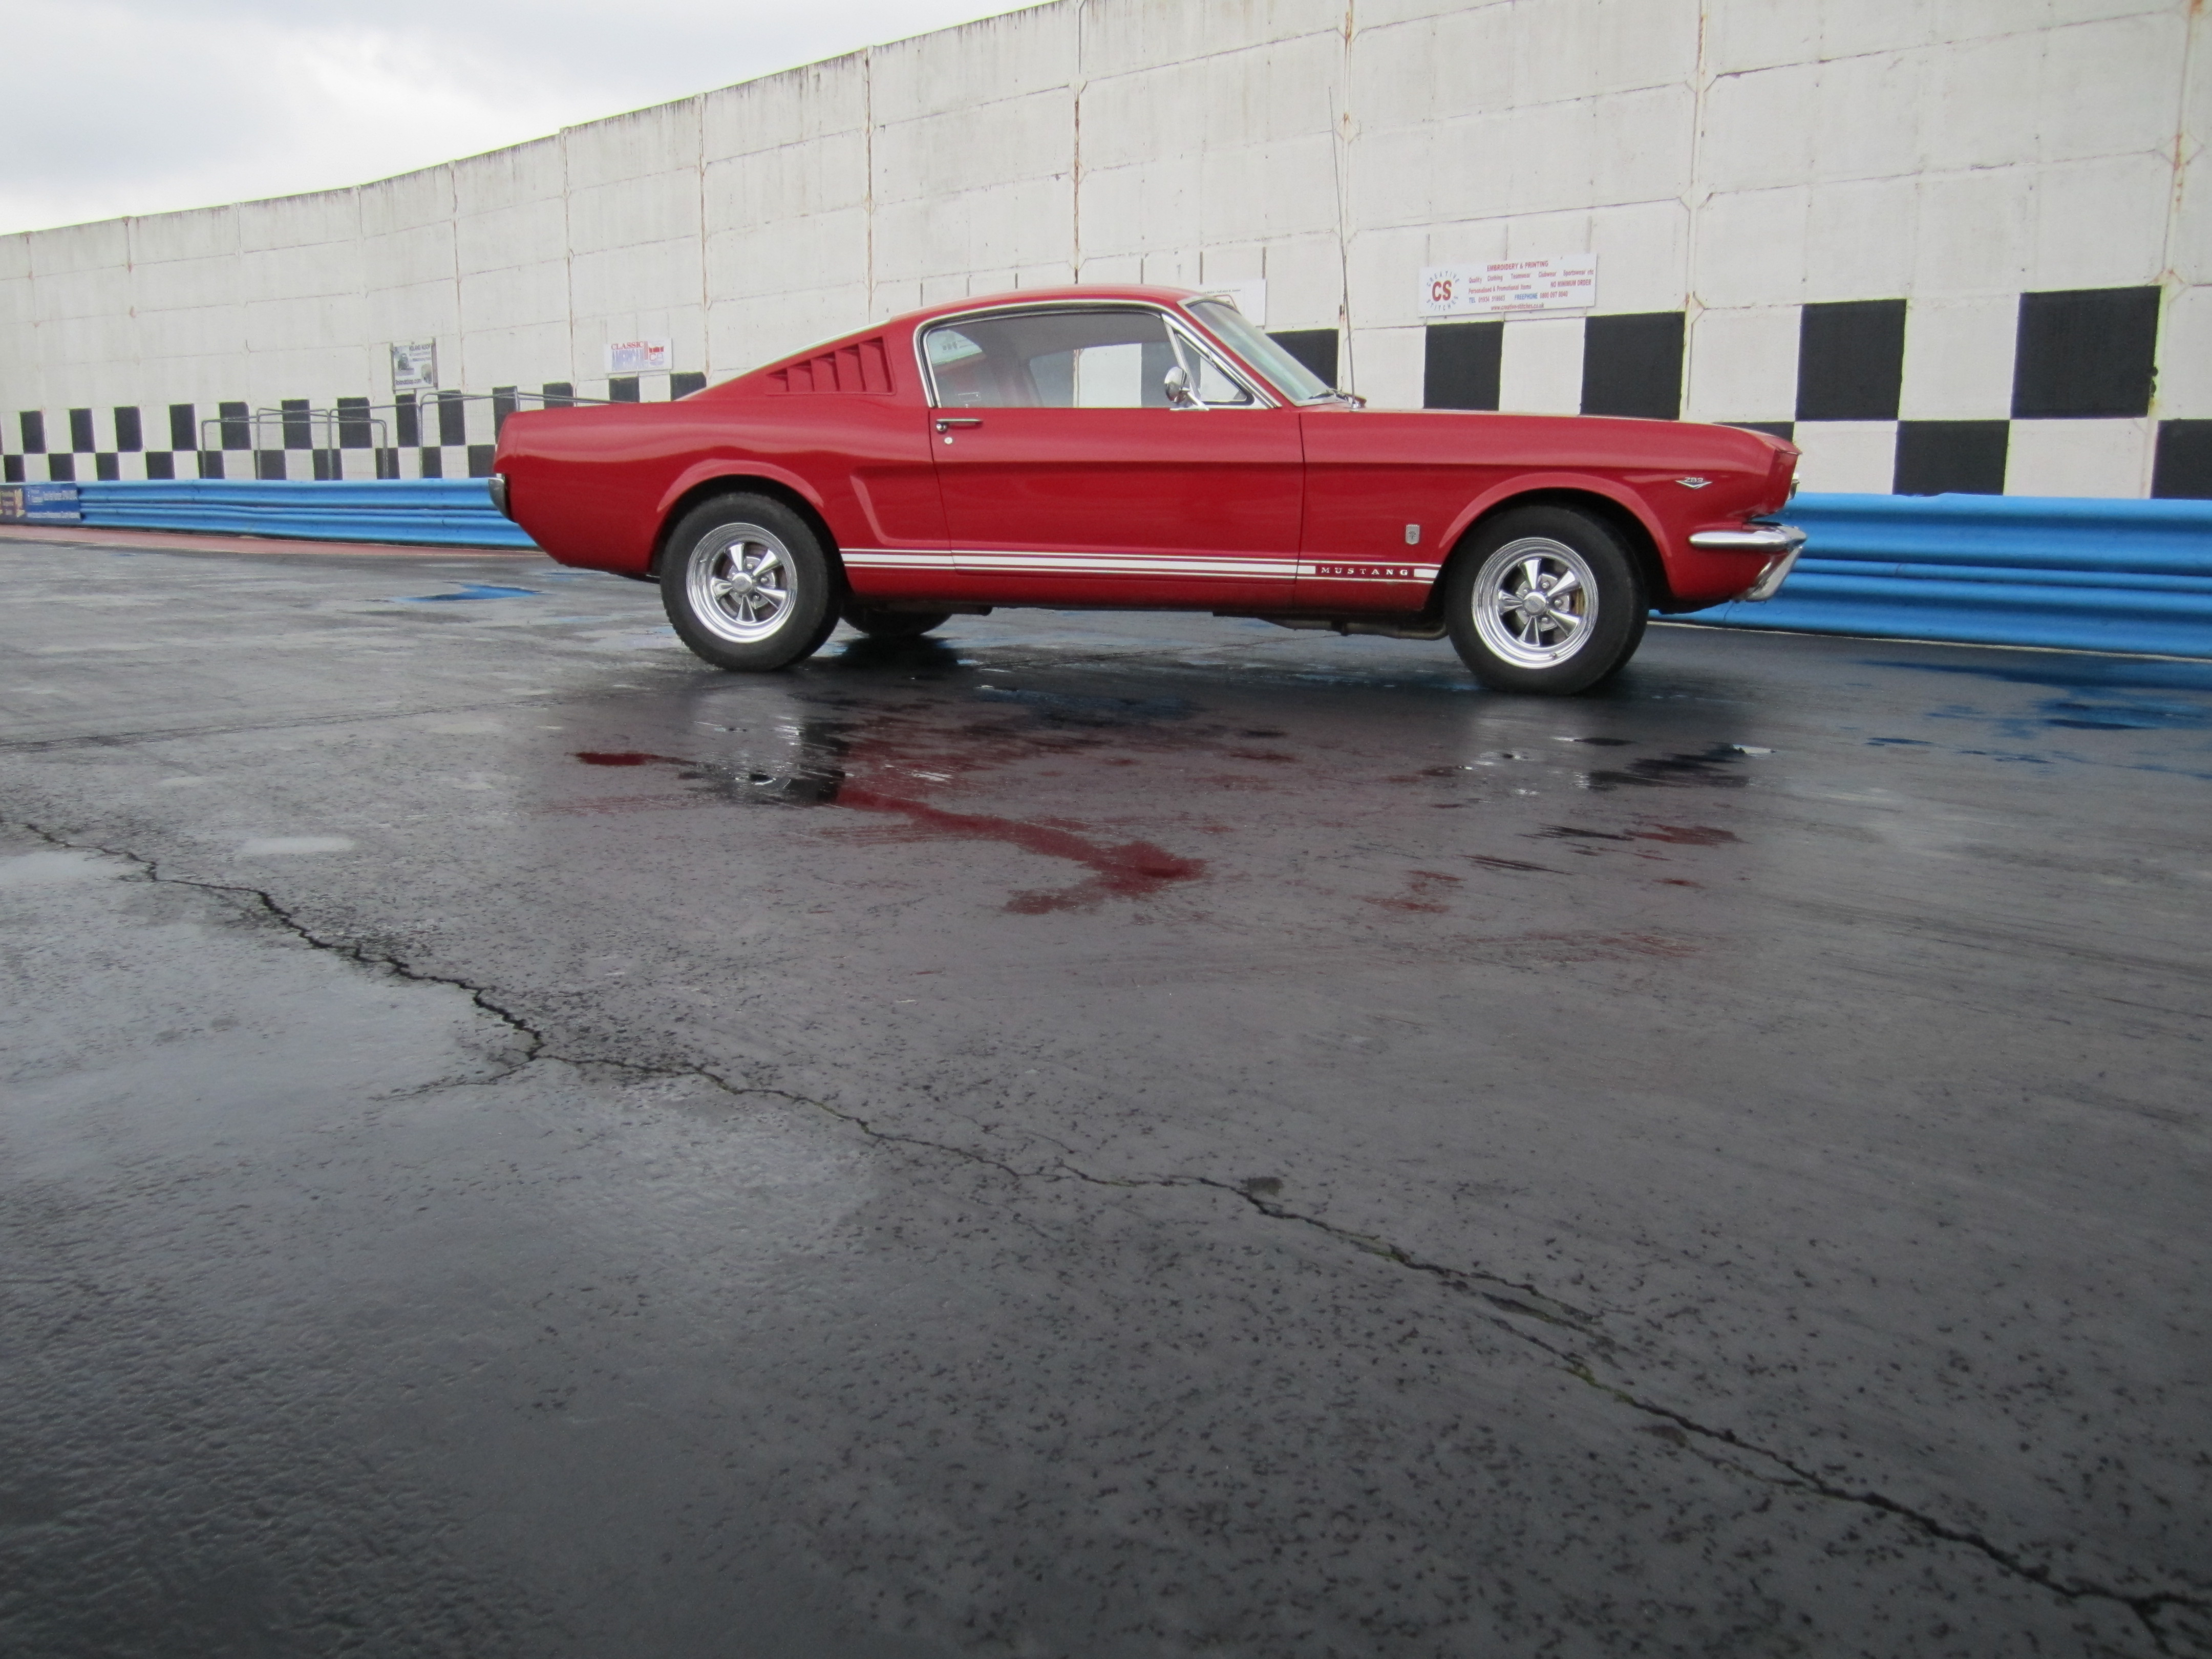 Mustang GT at SCR